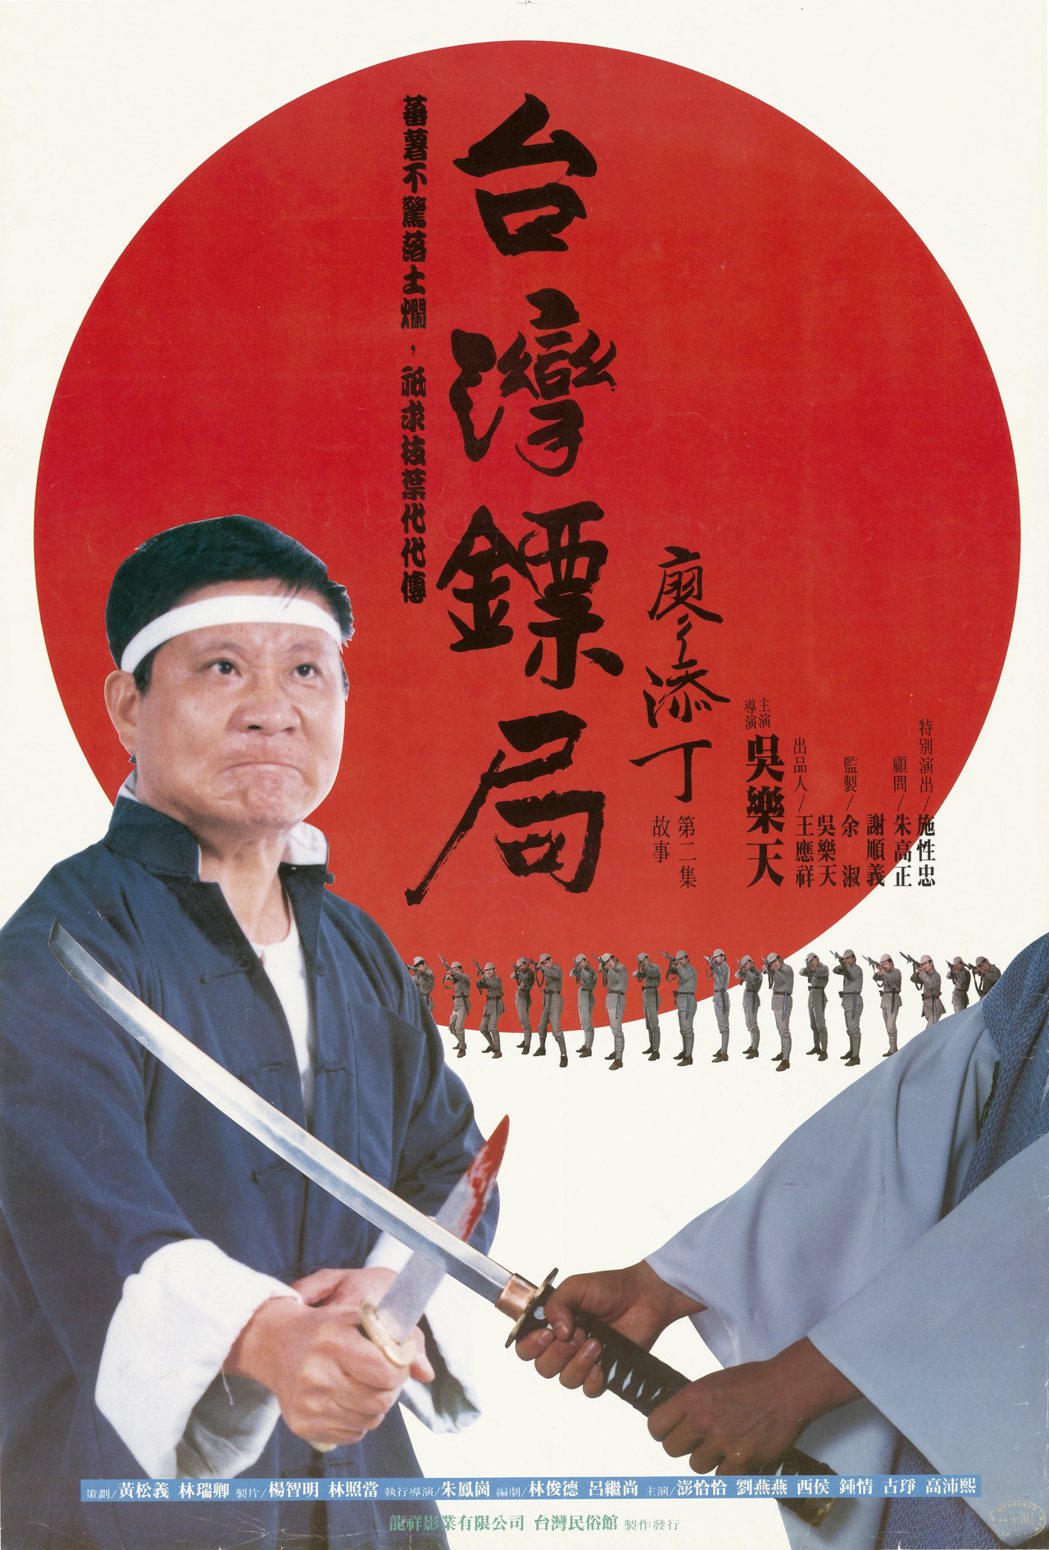 1988年電影《臺灣鏢局廖添丁》的海報，畫面是廖添丁手持短刃與日本人對峙的模樣，並配有「蕃薯不驚落土爛，祇求枝葉代代傳」的文字。（館藏號2004.007.0003）